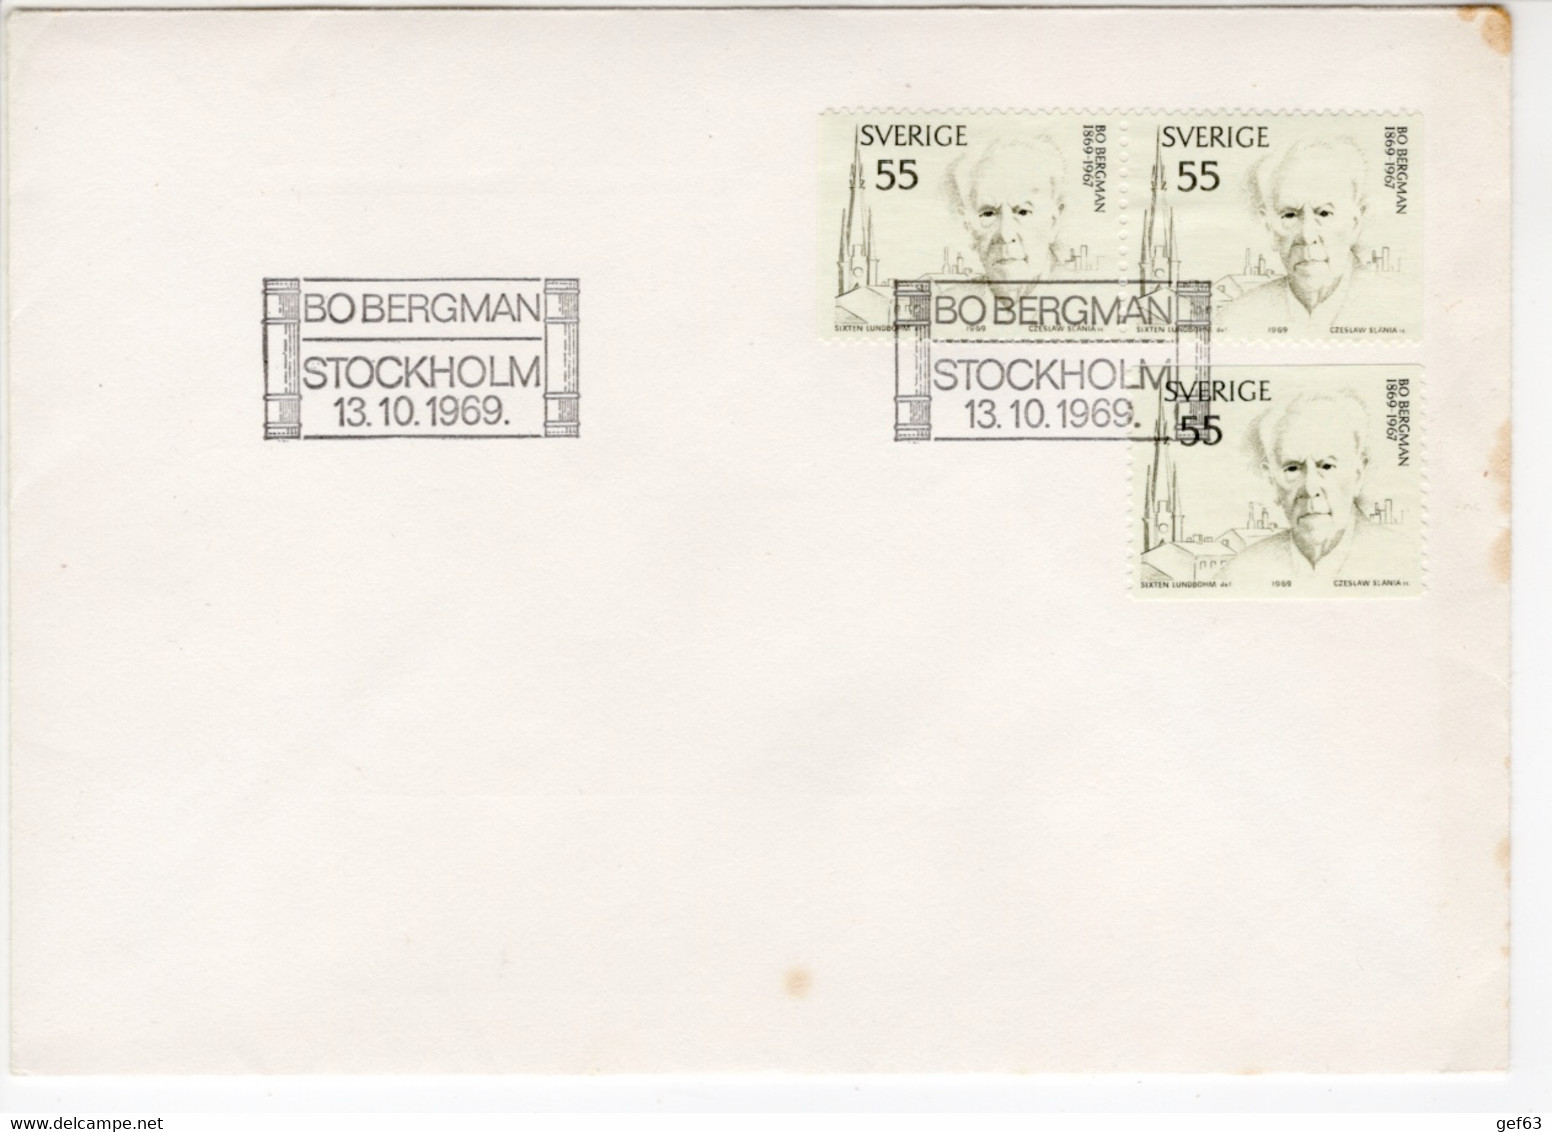 Bo Bergman - Stockholm 13.10.1969 - Local Post Stamps